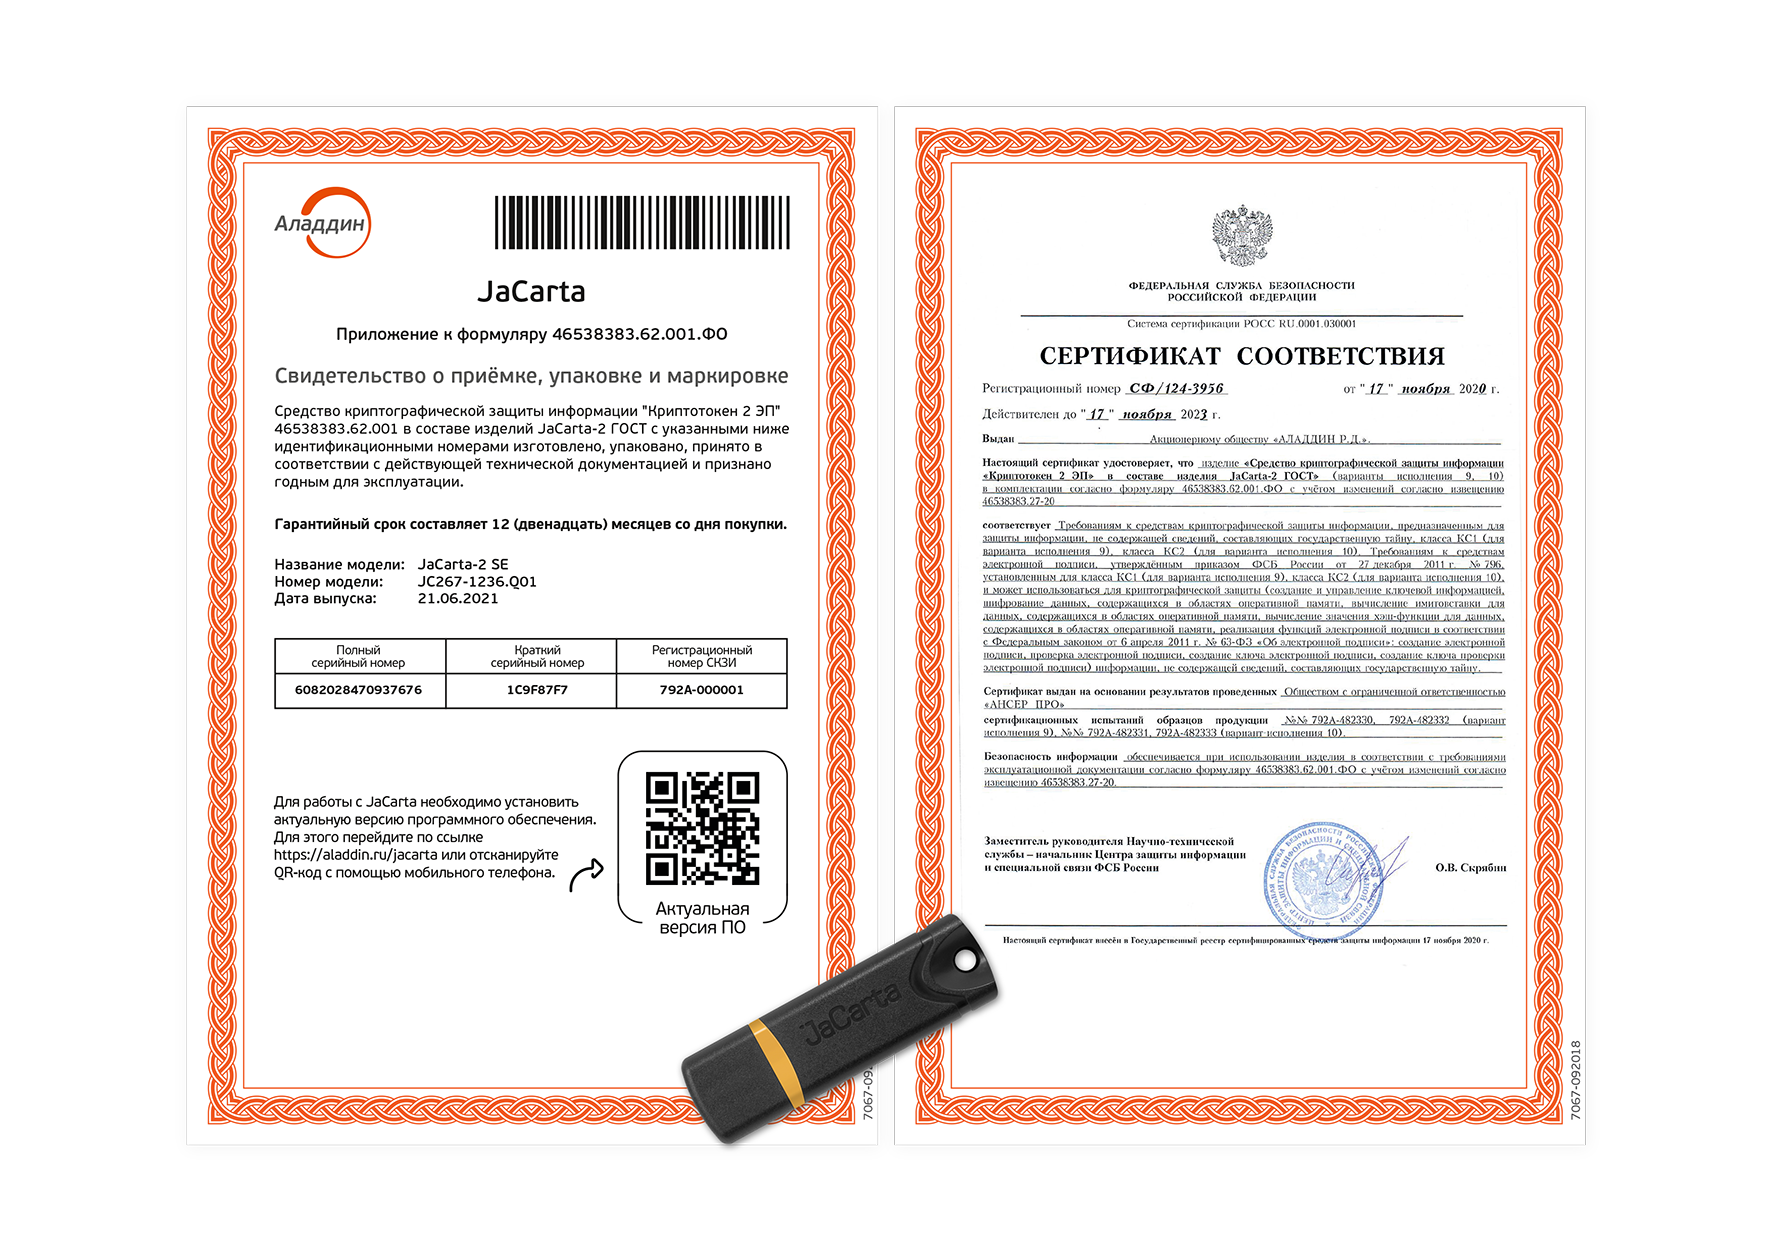 USB-токен Jacarta PKI. Сертификат ФСТЭК. Сертификат электронной подписи. Сертификат соответствия электронной подписи. Сертификат подписи ЭЦП. Подлинность сертификата подписи